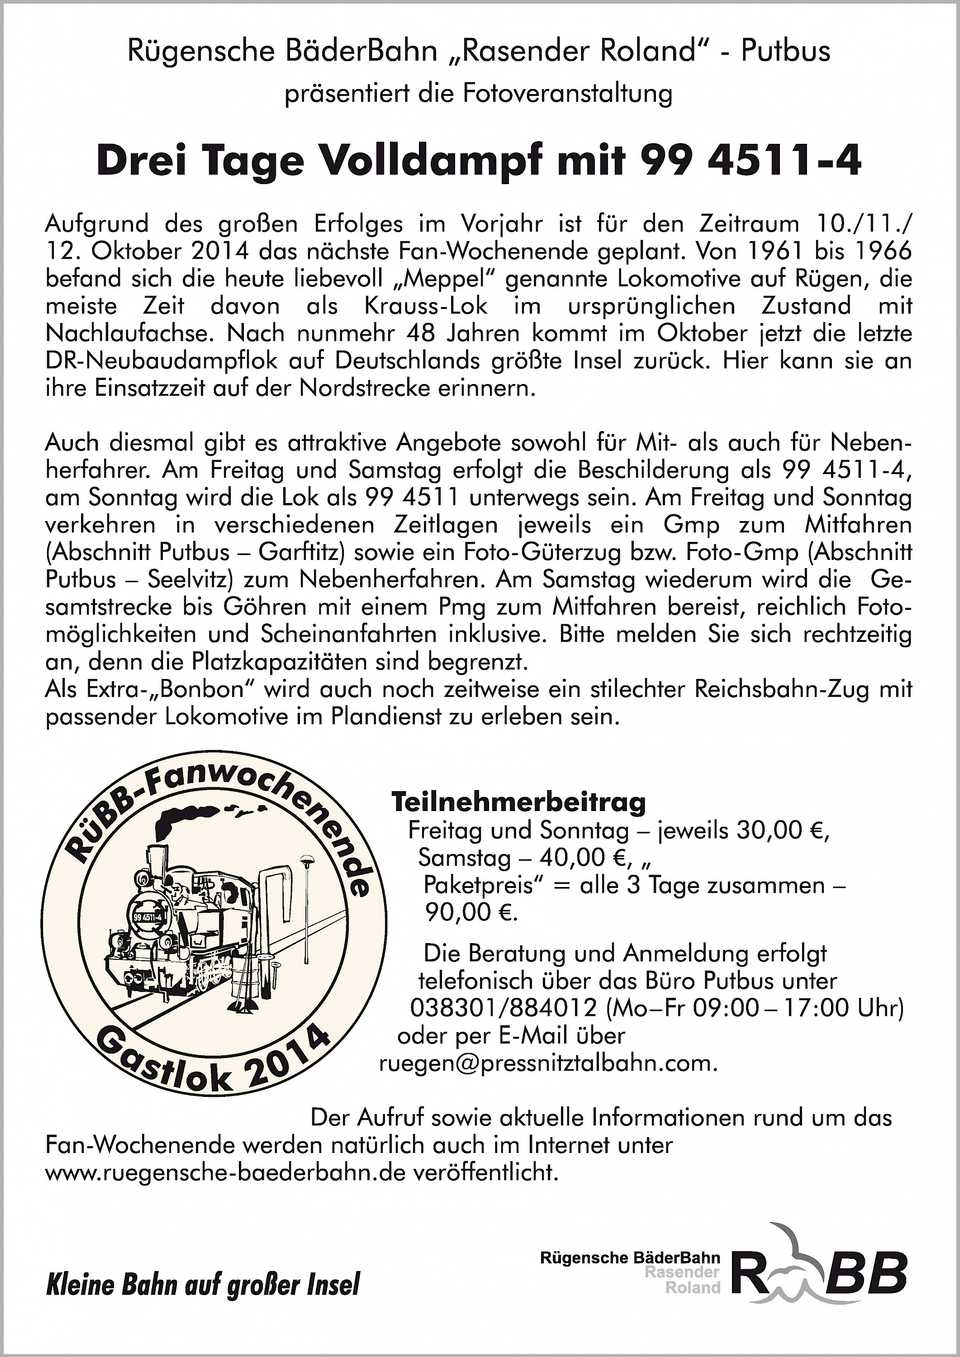 Veranstaltungsankündigung: 10.-12. Oktober 2014: Drei Tage Volldampf mit 99 4511-4 auf der Rügenschen BäderBahn